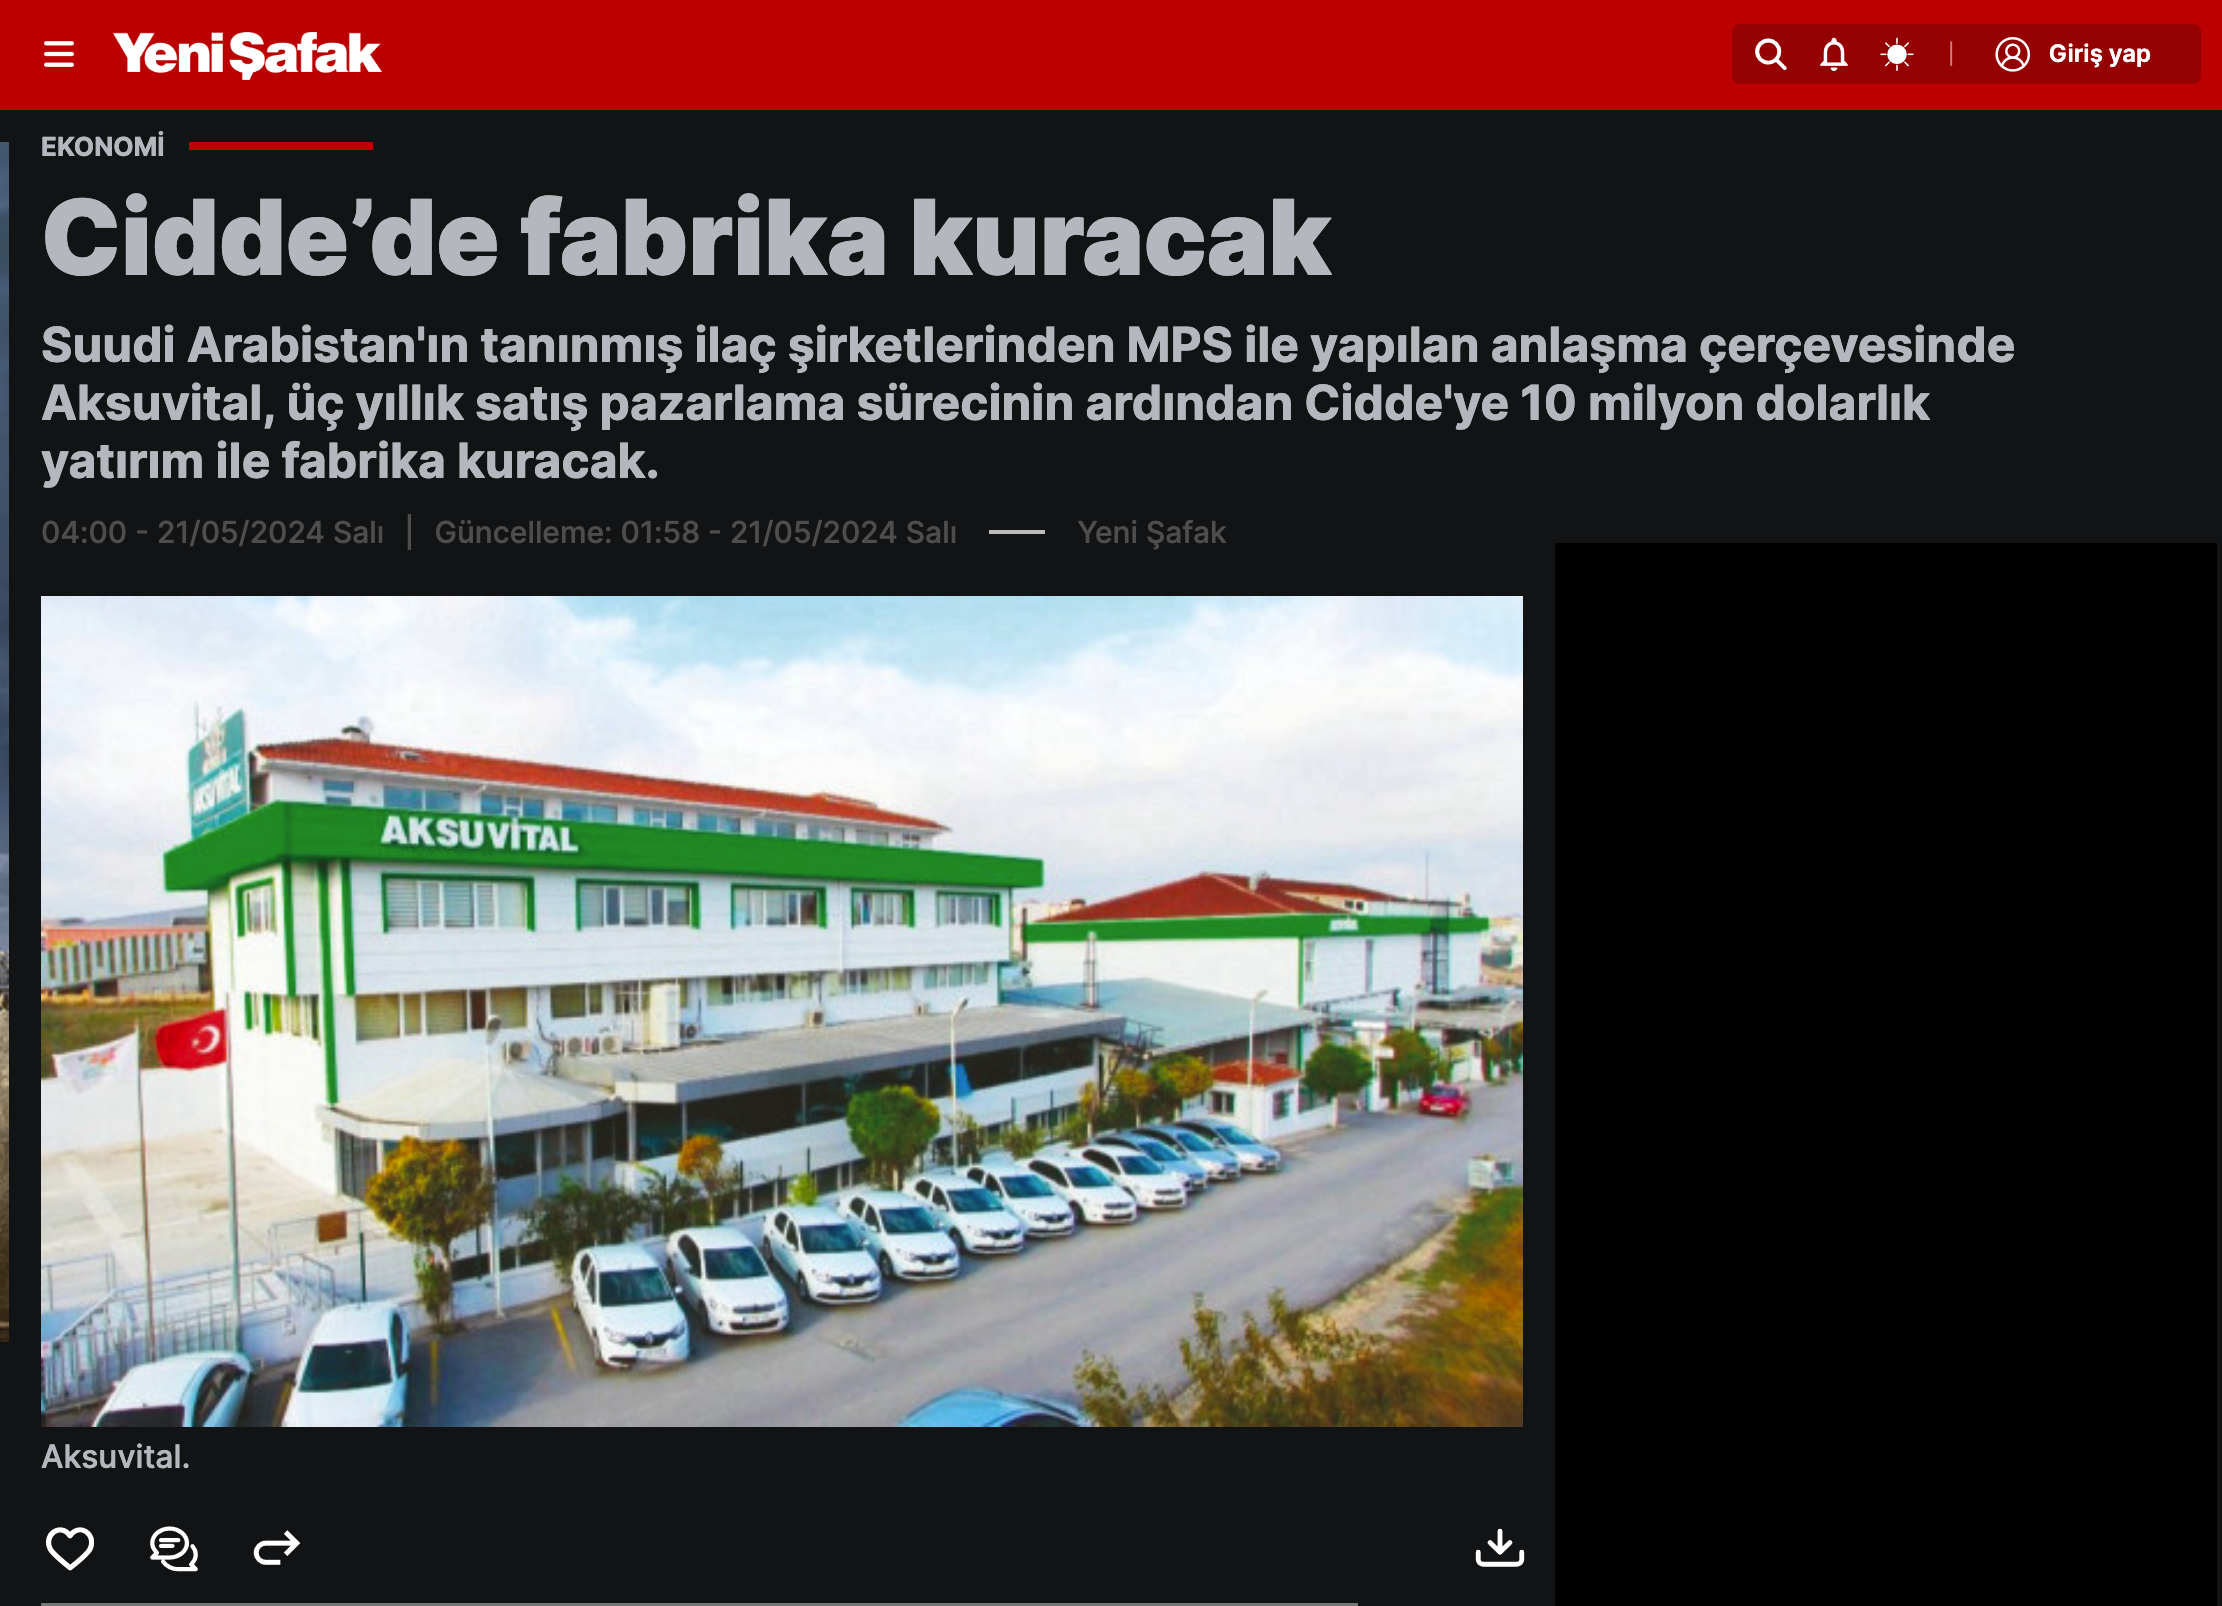 Yeni Şafak Gazetesi : Aksuvital A.Ş. Cidde’de fabrika kuracak